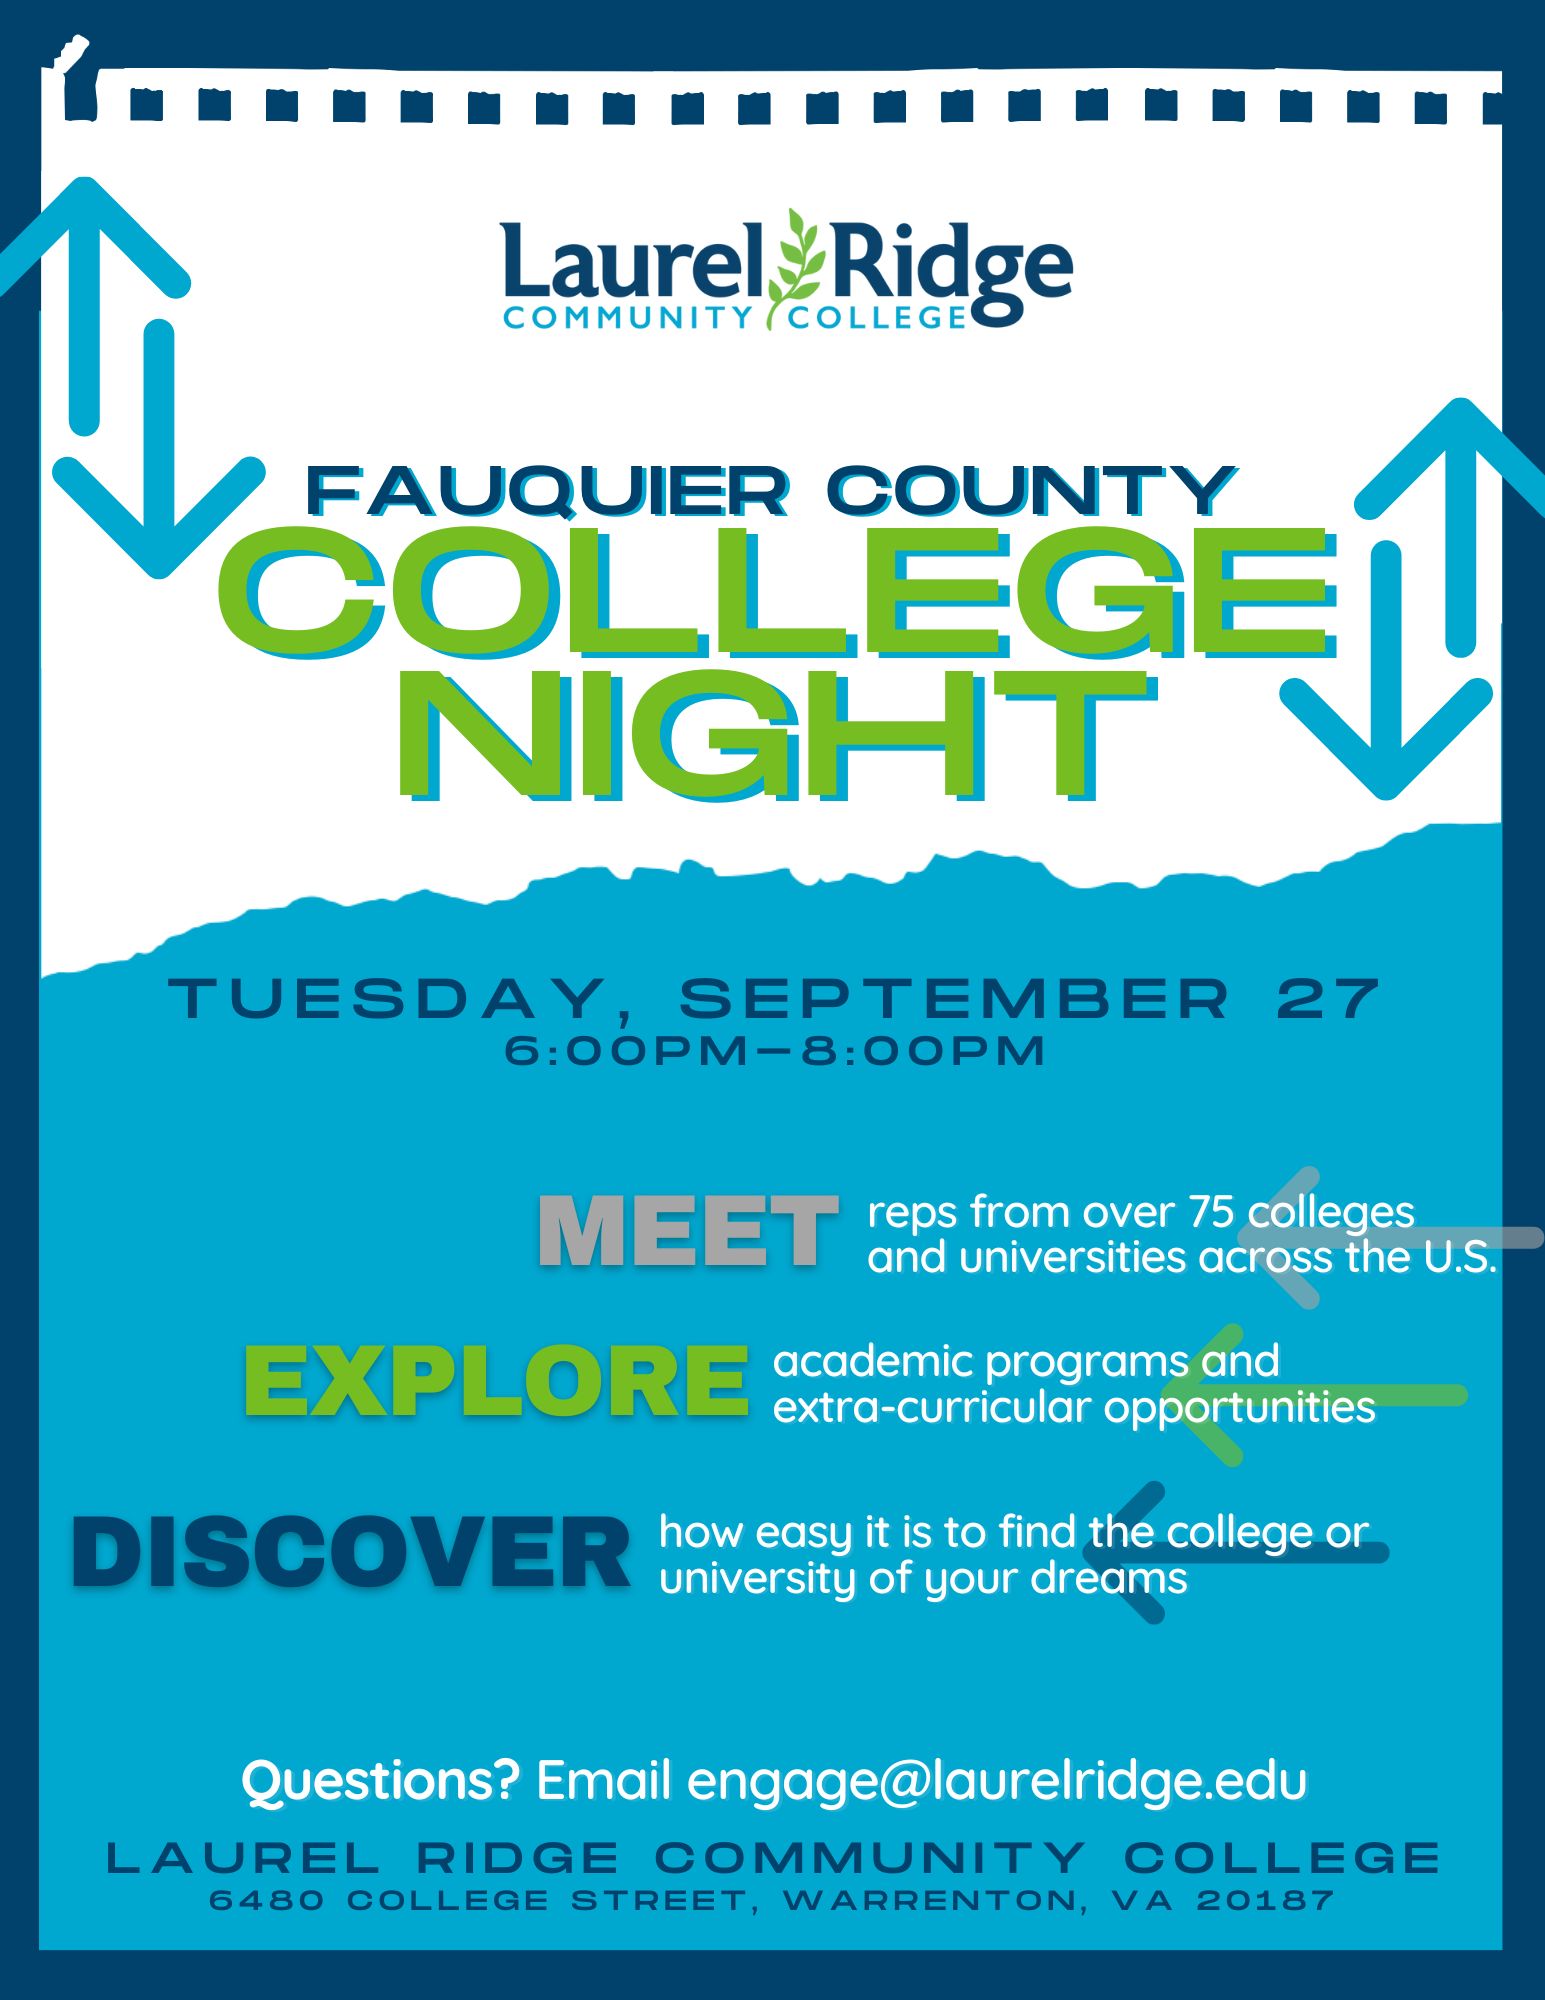 College night 2022 at Laurel Ridge